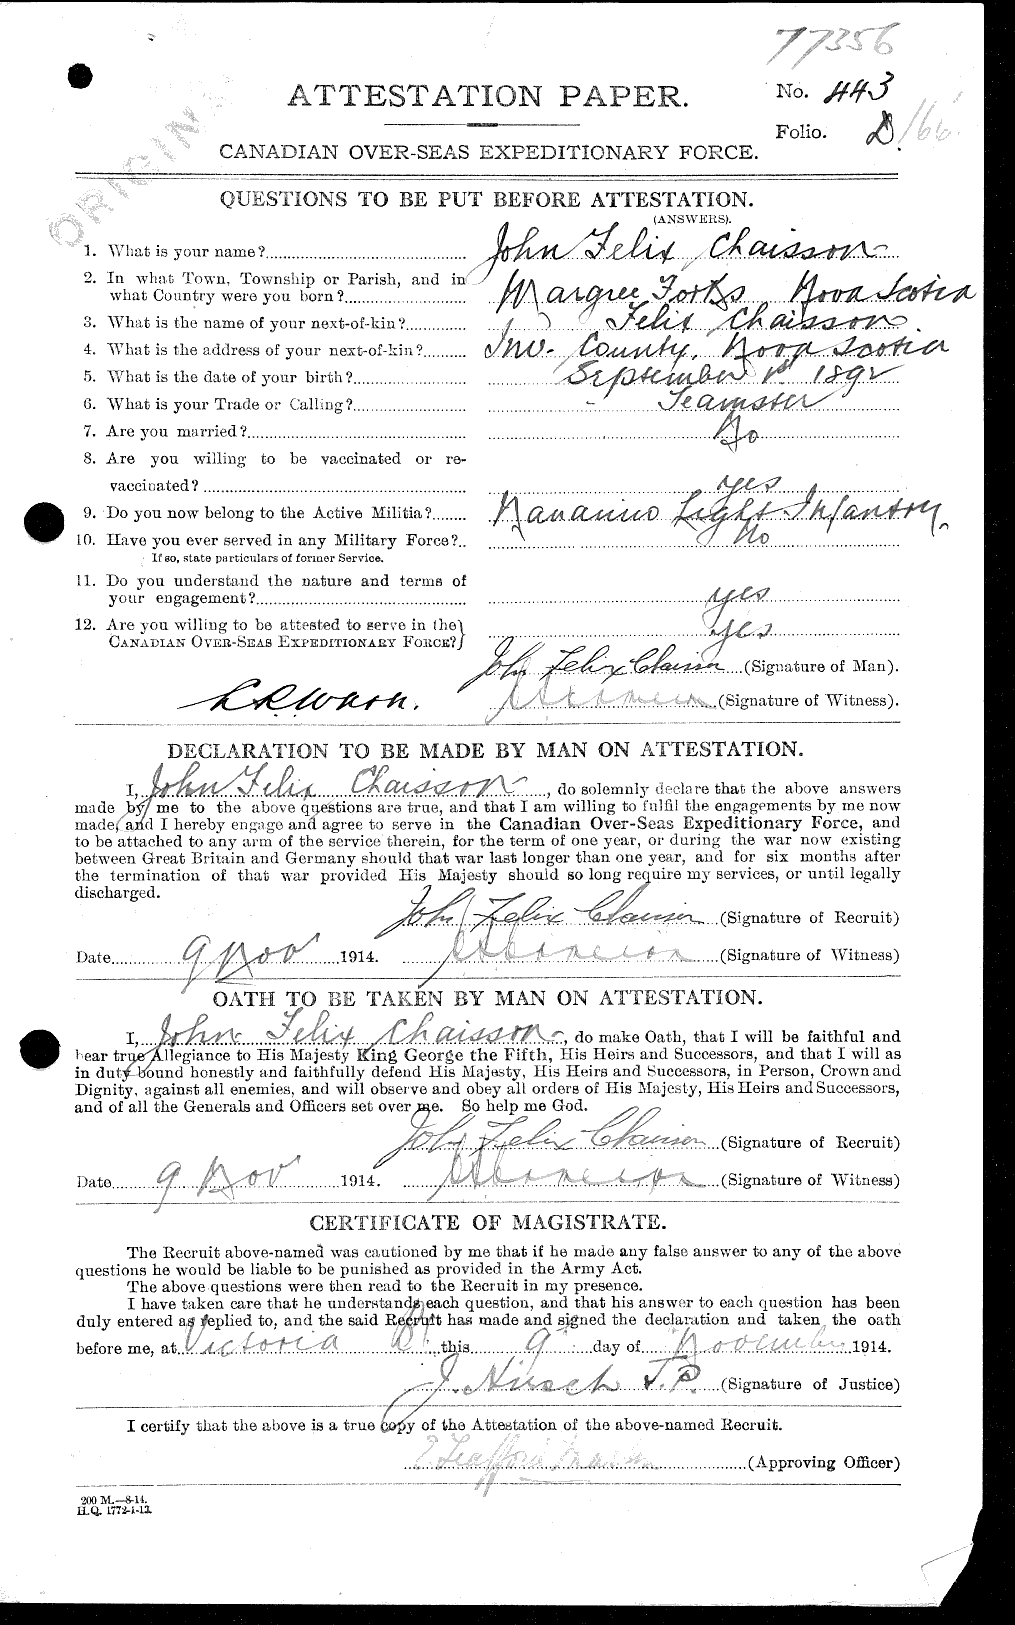 Dossiers du Personnel de la Première Guerre mondiale - CEC 012312a